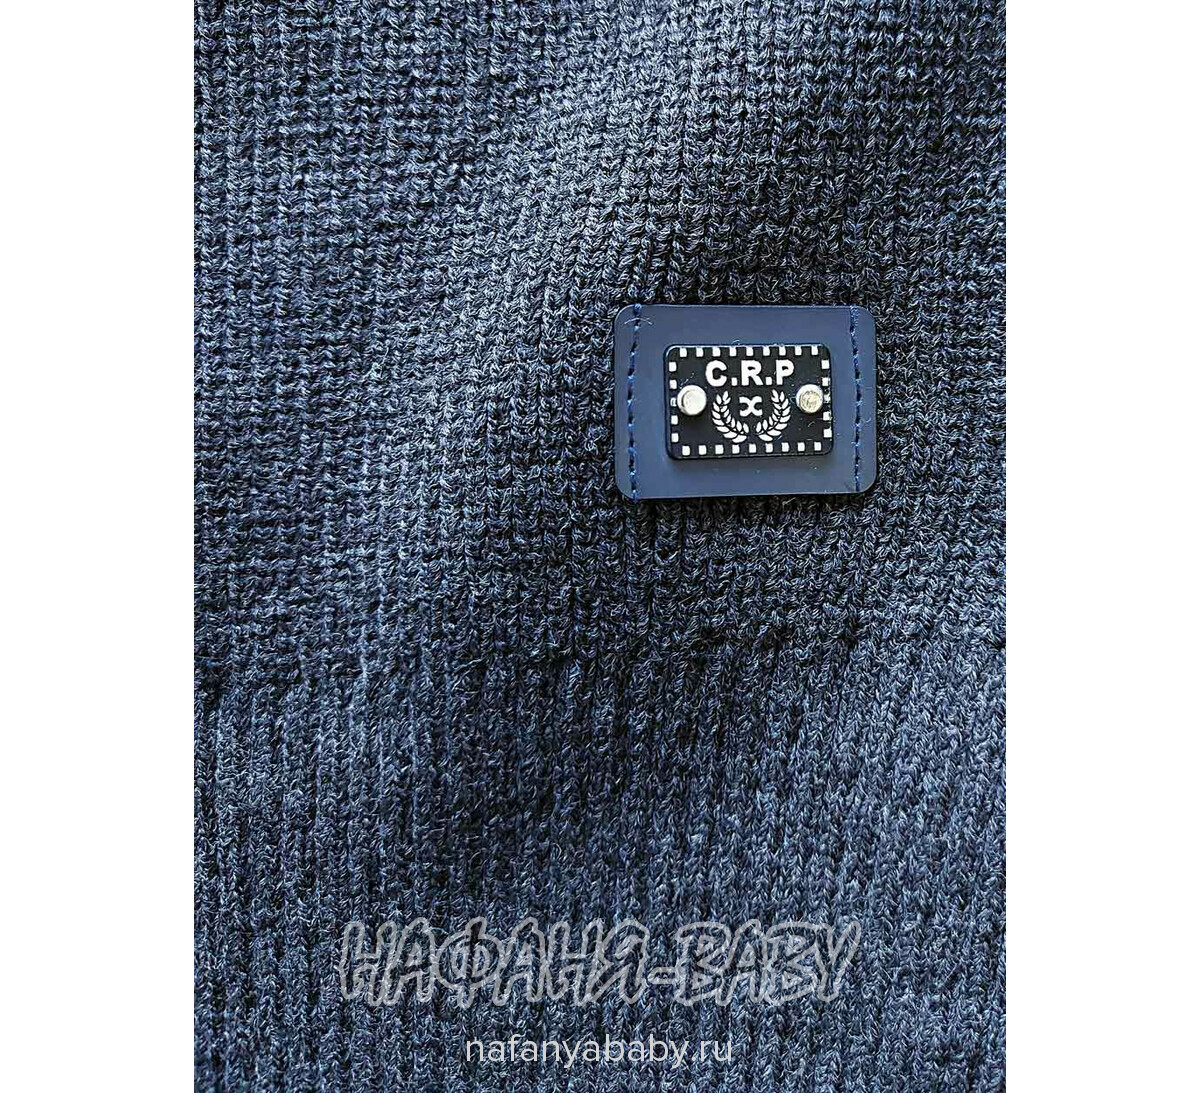 Вязаный джемпер CORPORALS, купить в интернет магазине Нафаня. арт: 7575 цвет темно-серый с синим.